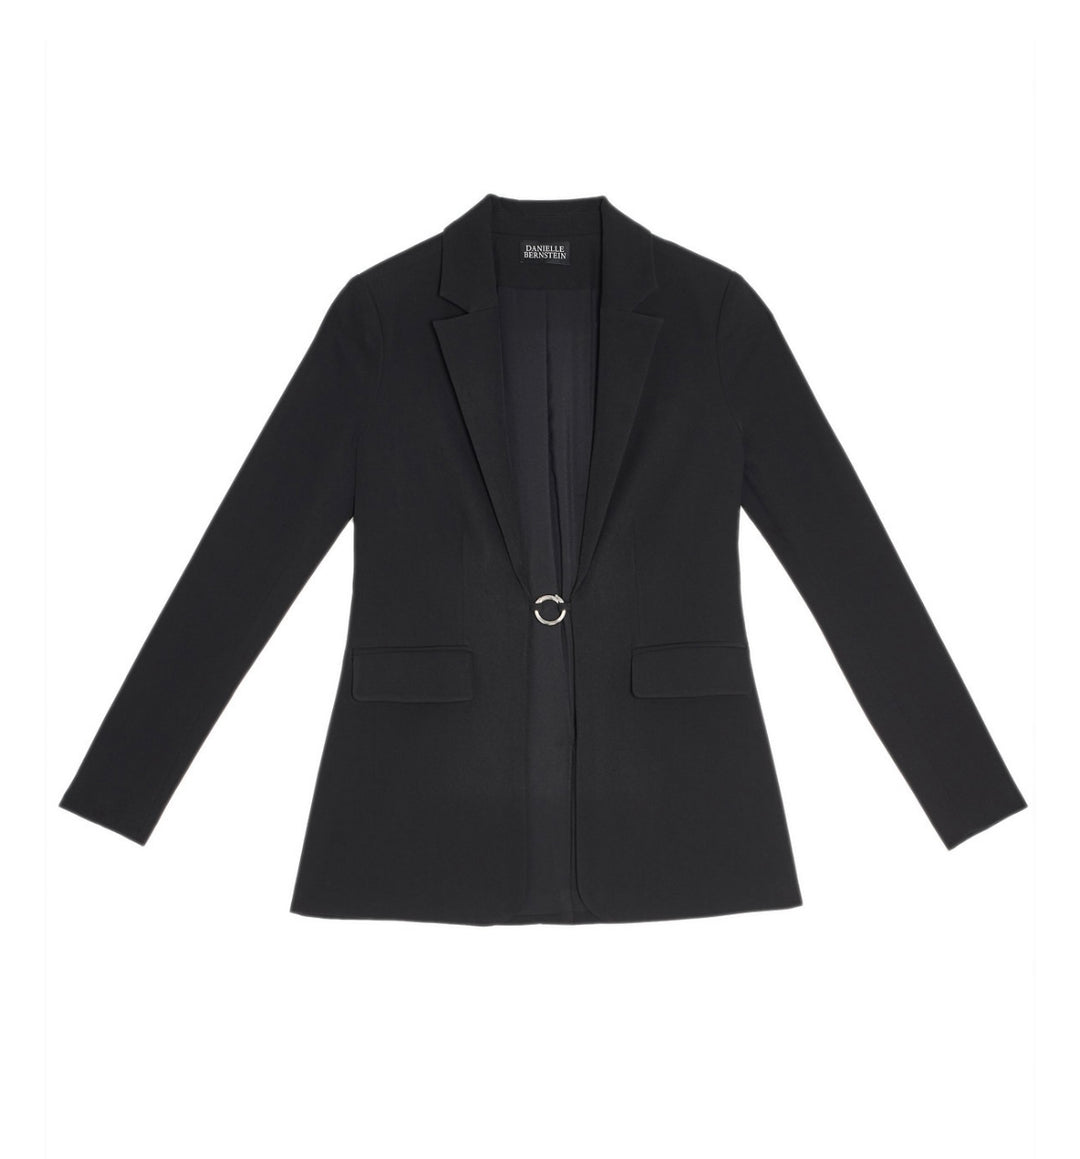 Danielle Bernstein Women's Pocketed Blazer Evening Jacket Black Size M